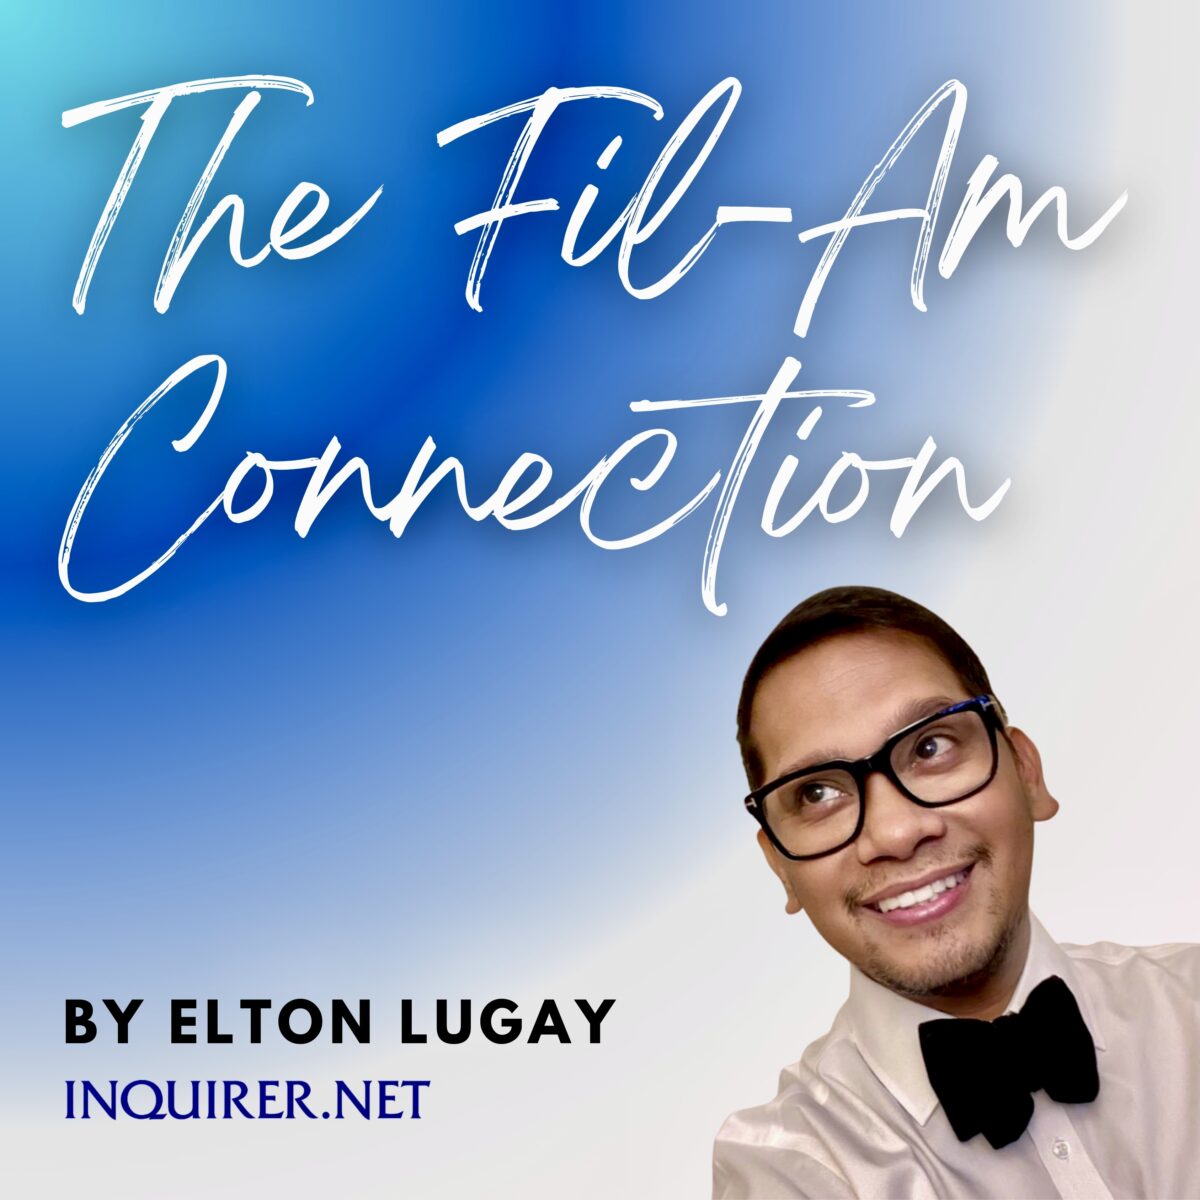 Elton Lugay column ID